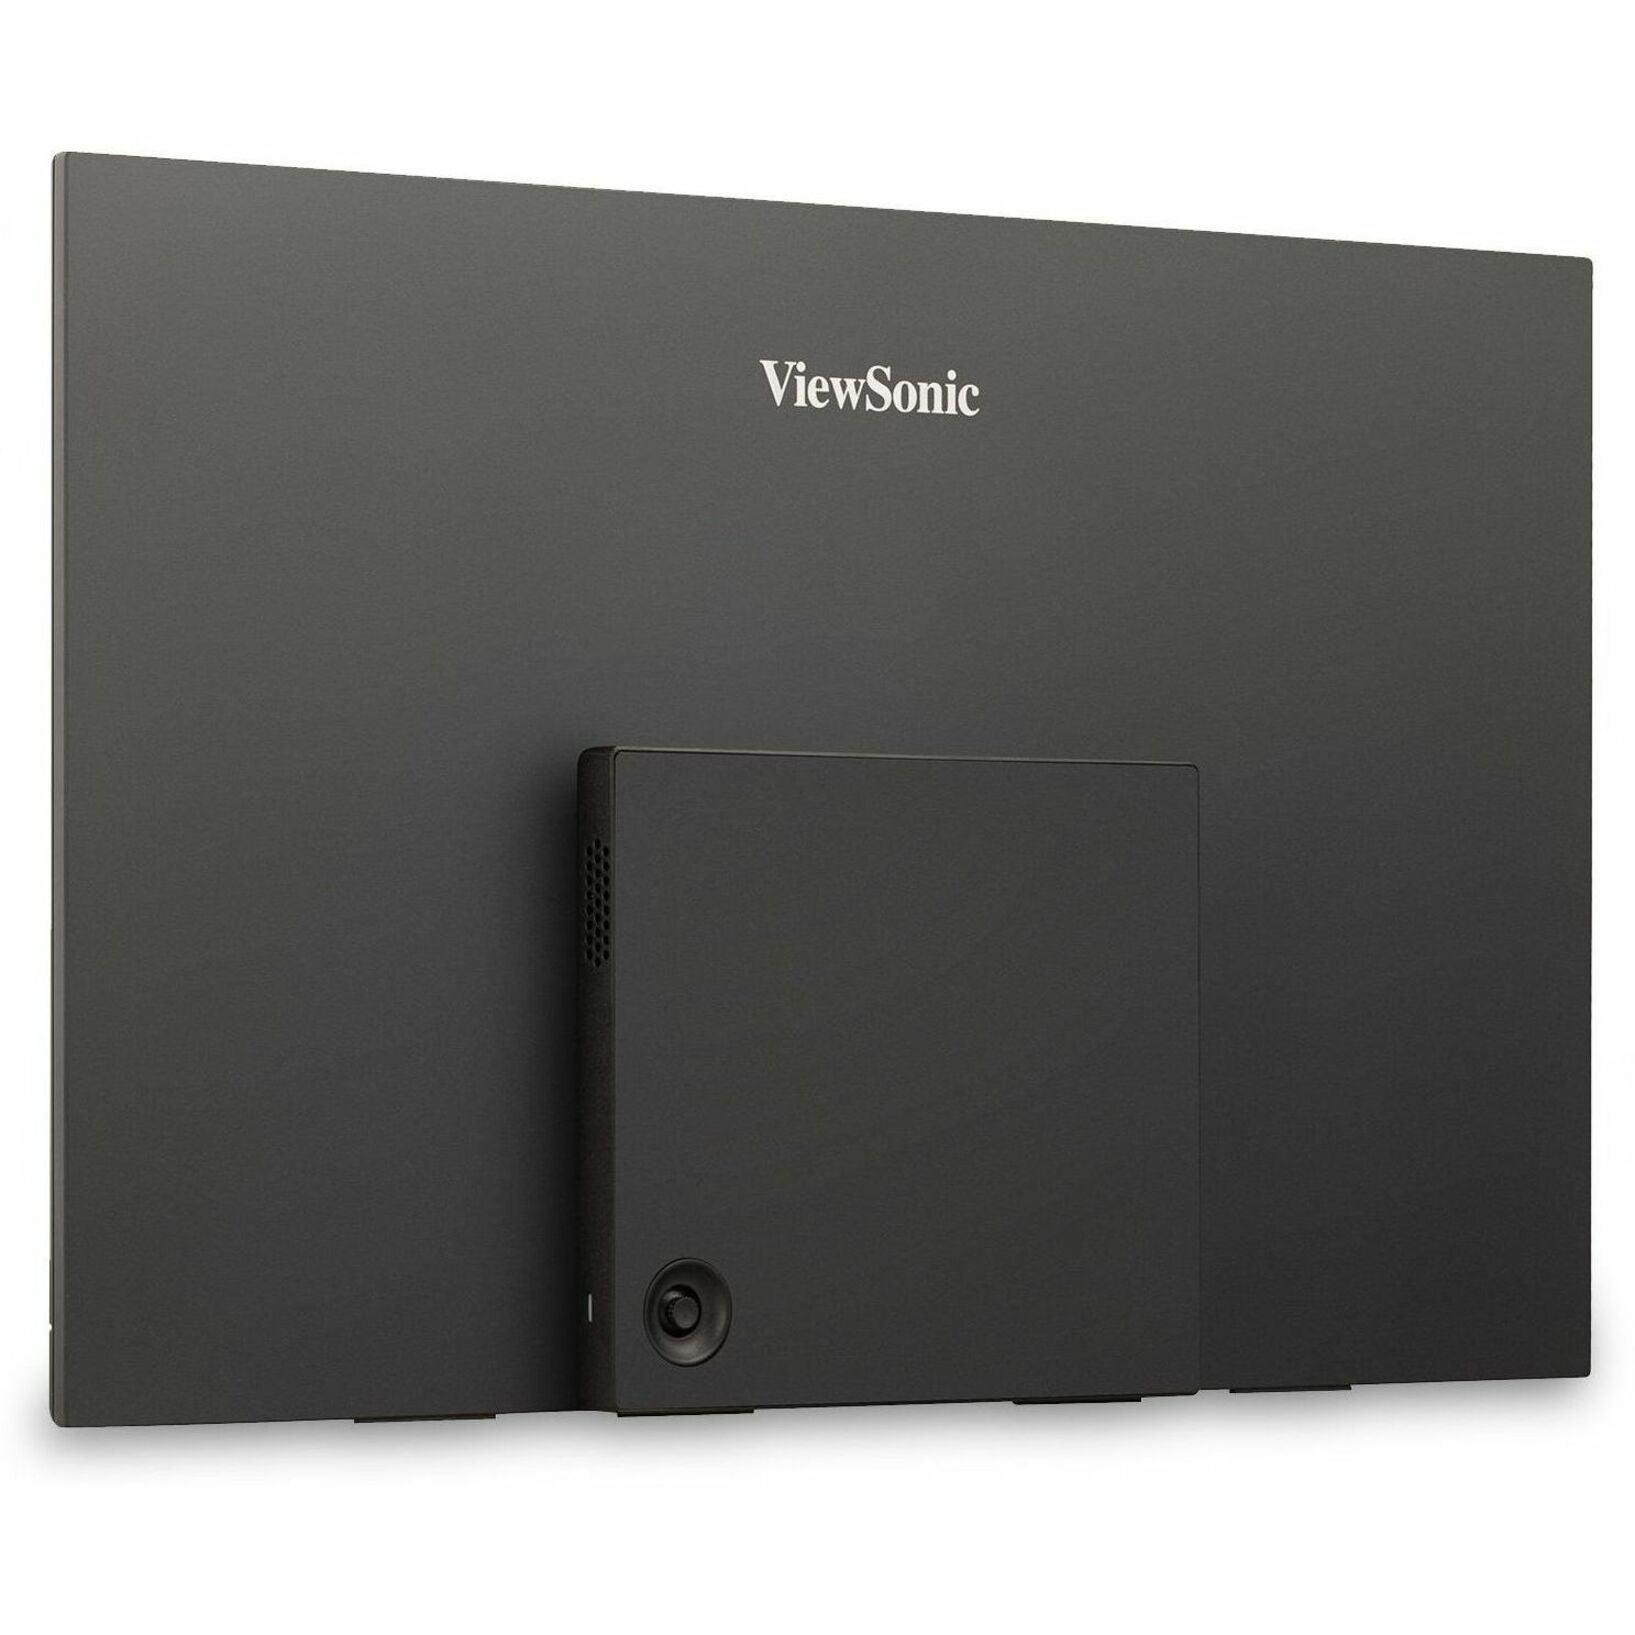 عرض شاشة ViewSonic VX1655-4K للألعاب LED ، شاشة قابلة للنقل بدقة  15.6 "4K UHD مع 60 وات منفذ USB C و mini HDMI العلامة التجارية: فيوسونيك  فيوسونيك